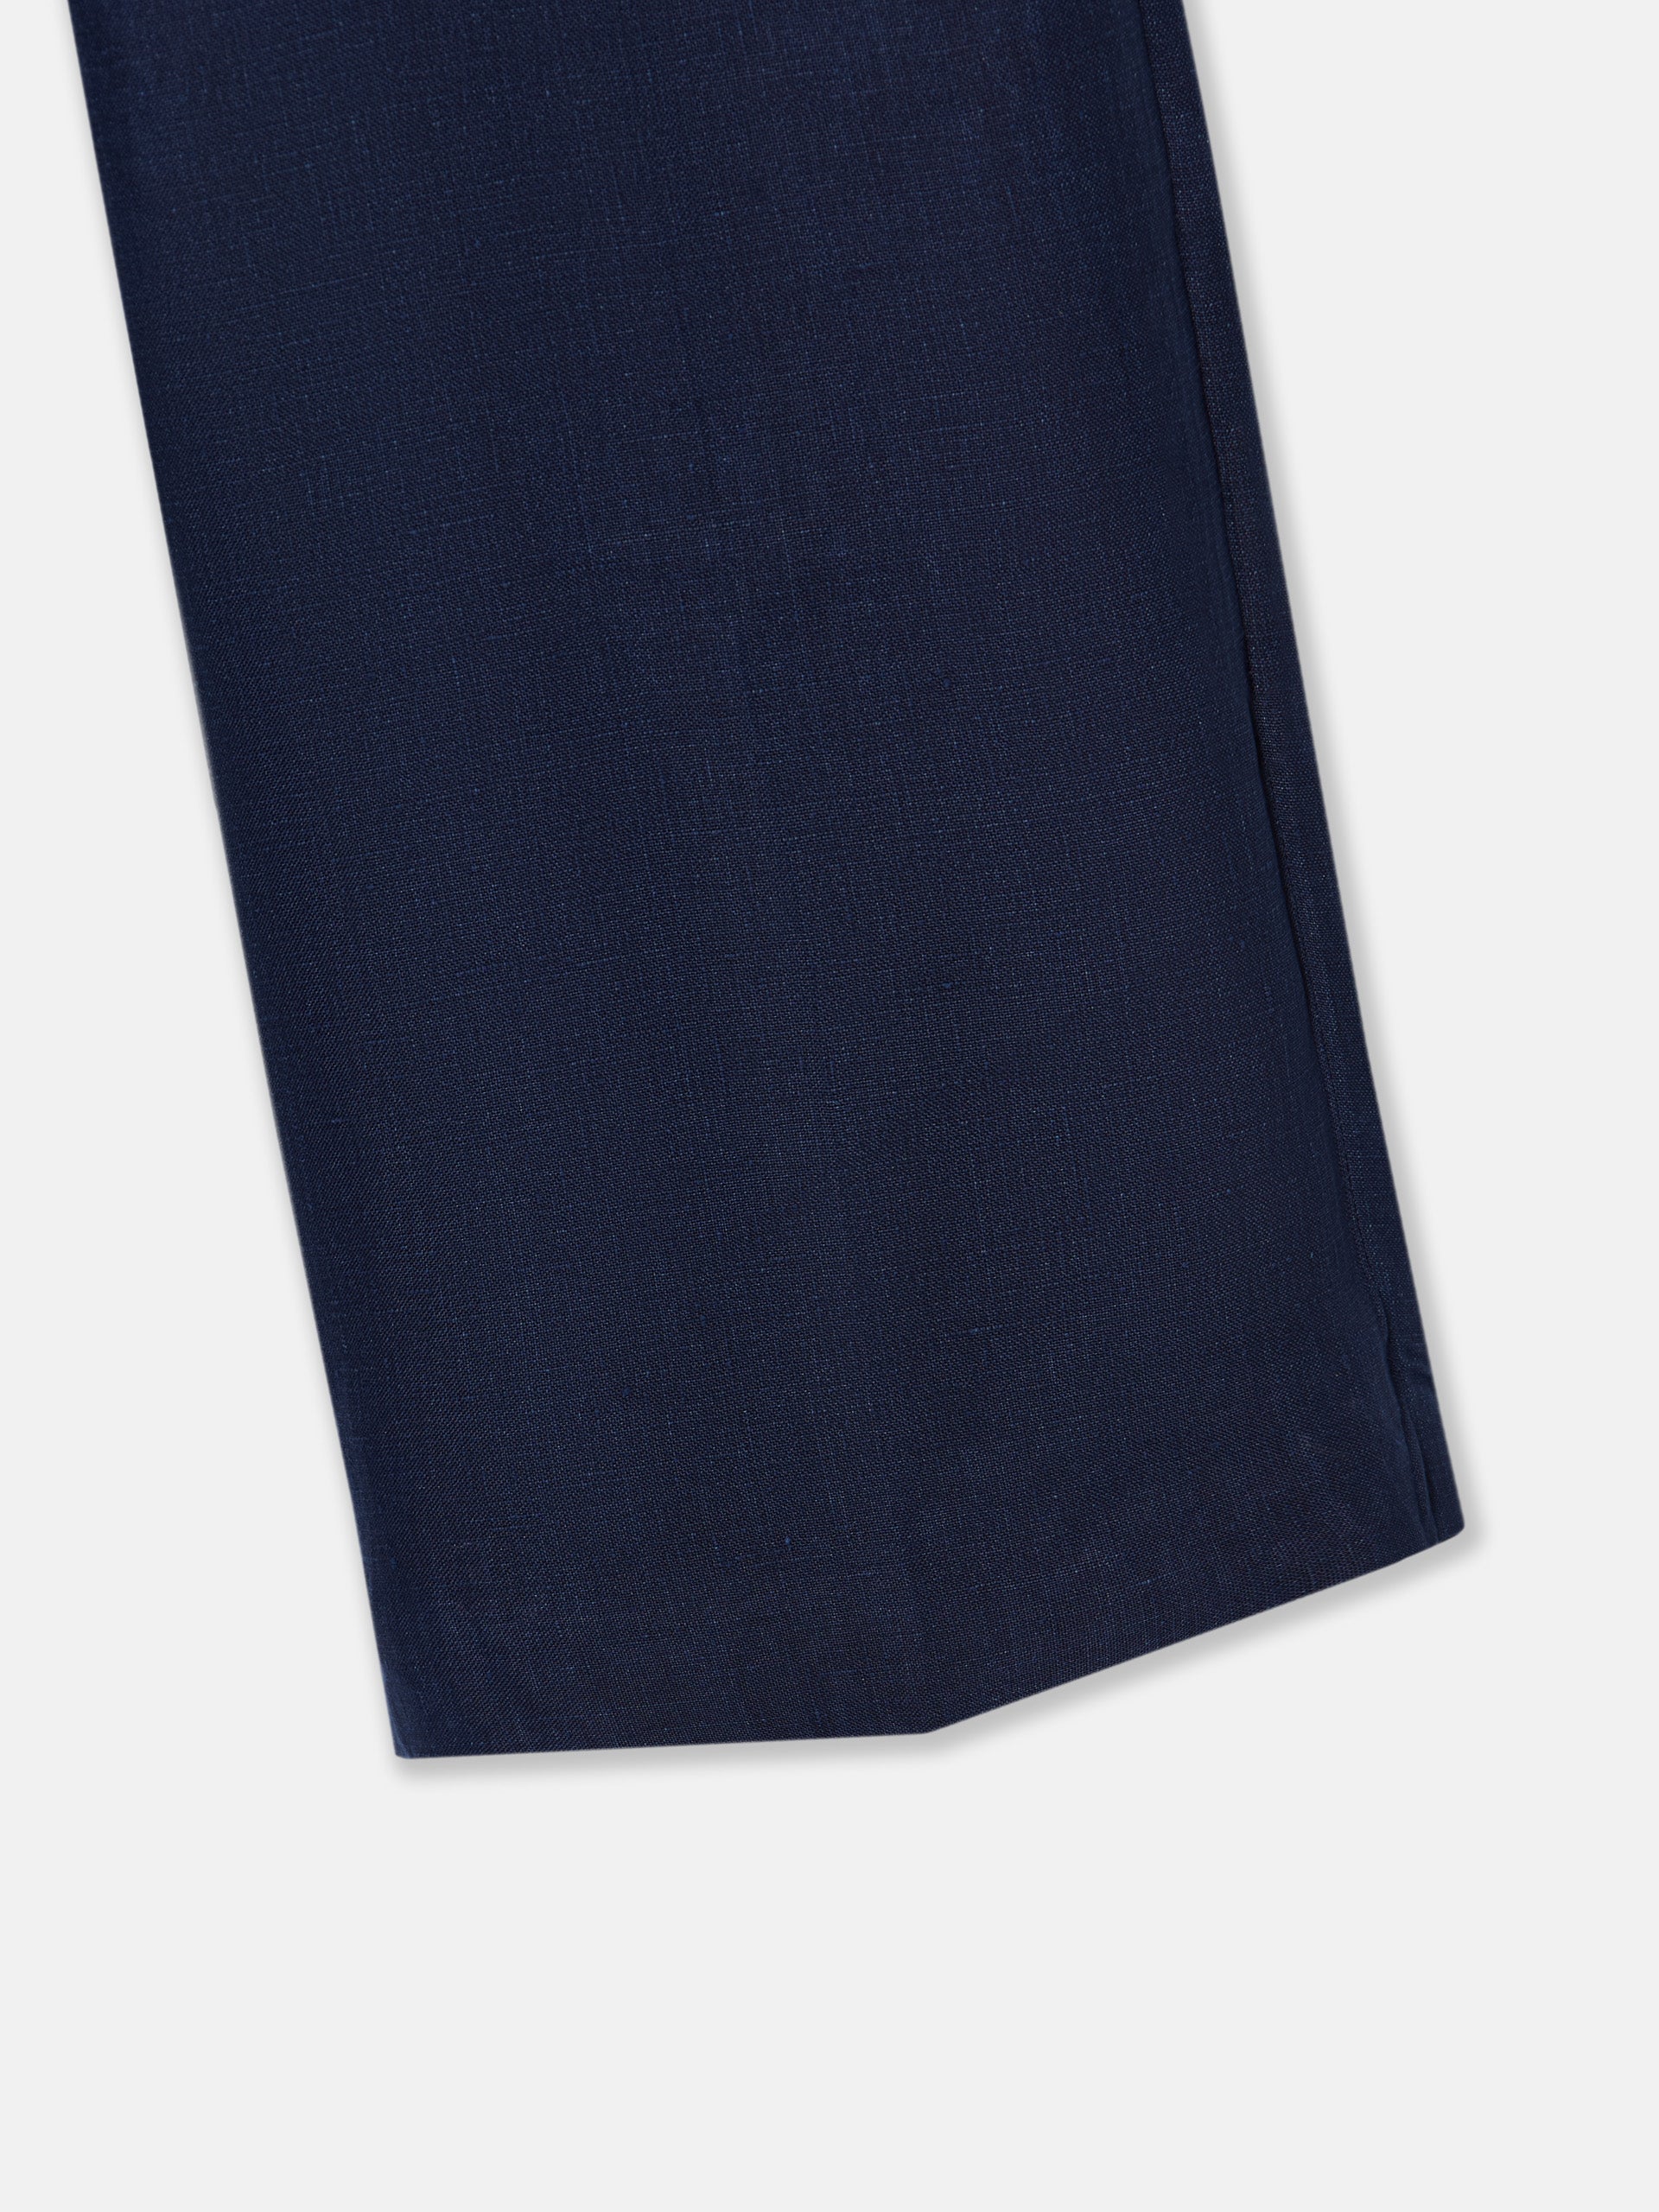 Women's blue linen dress pants